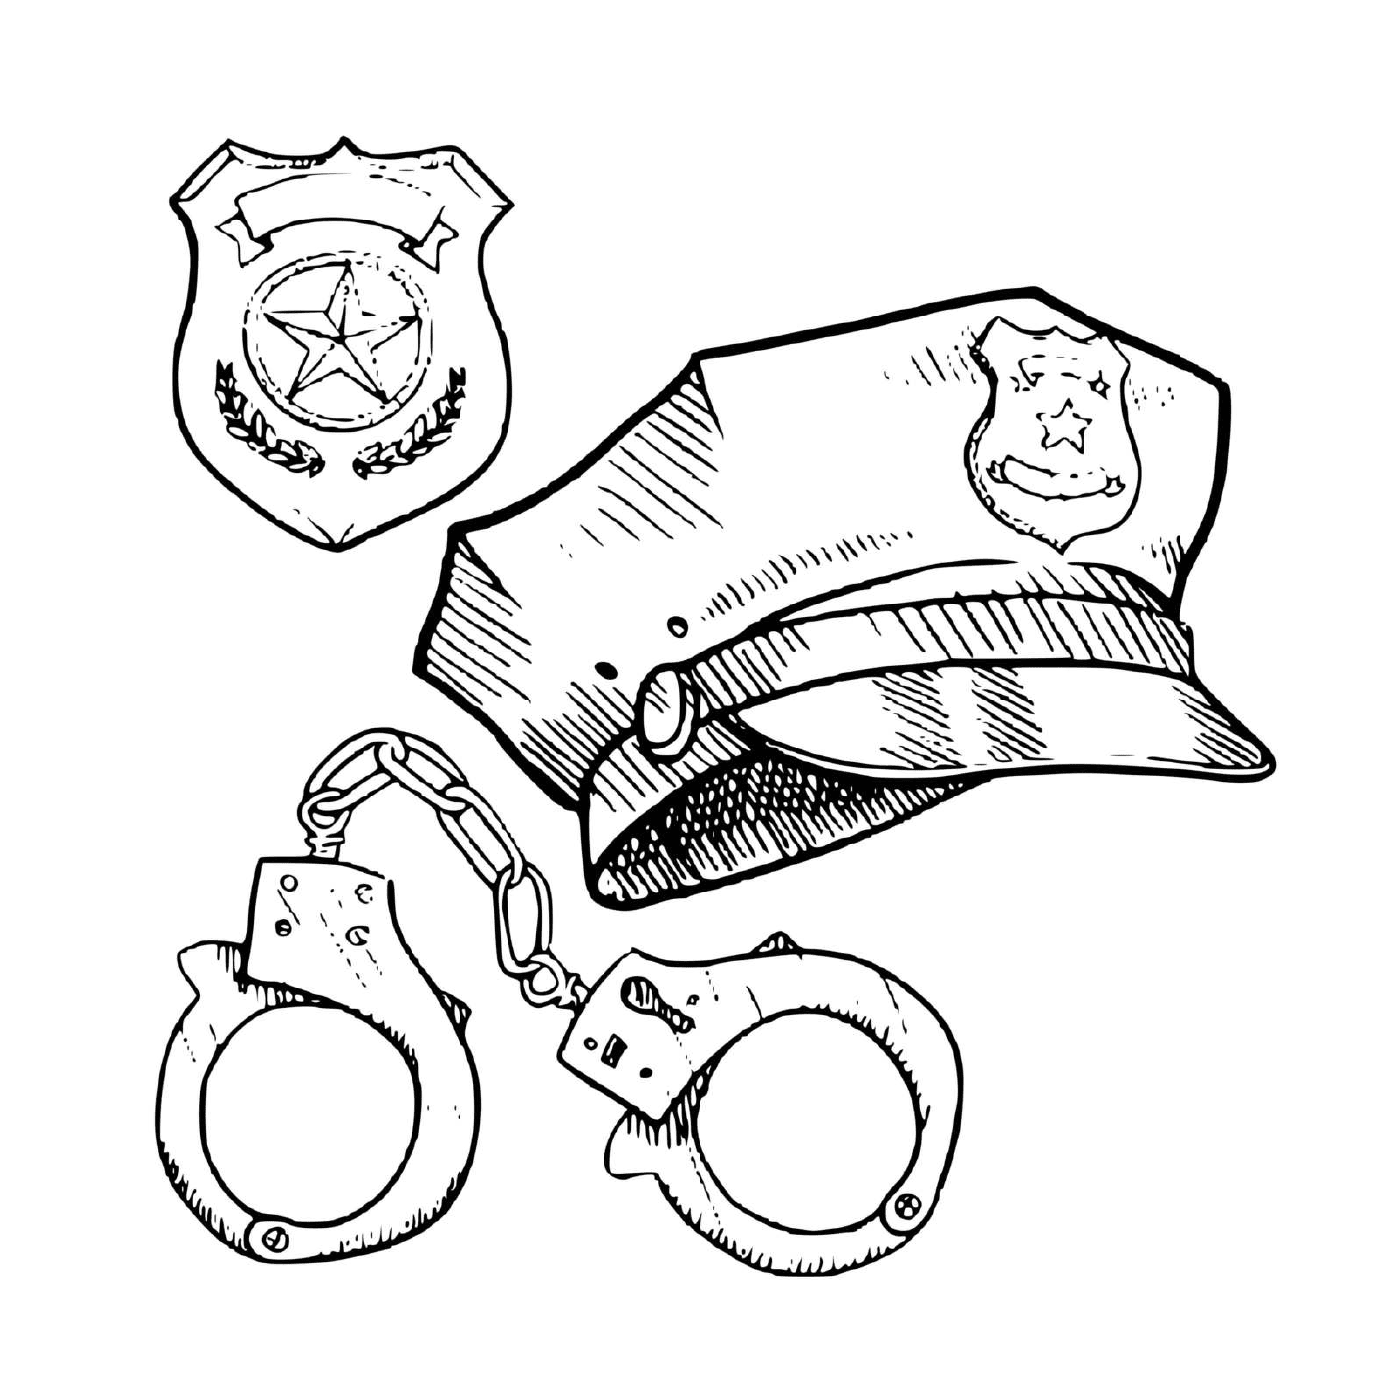   Équipement policier : casquette, menottes 